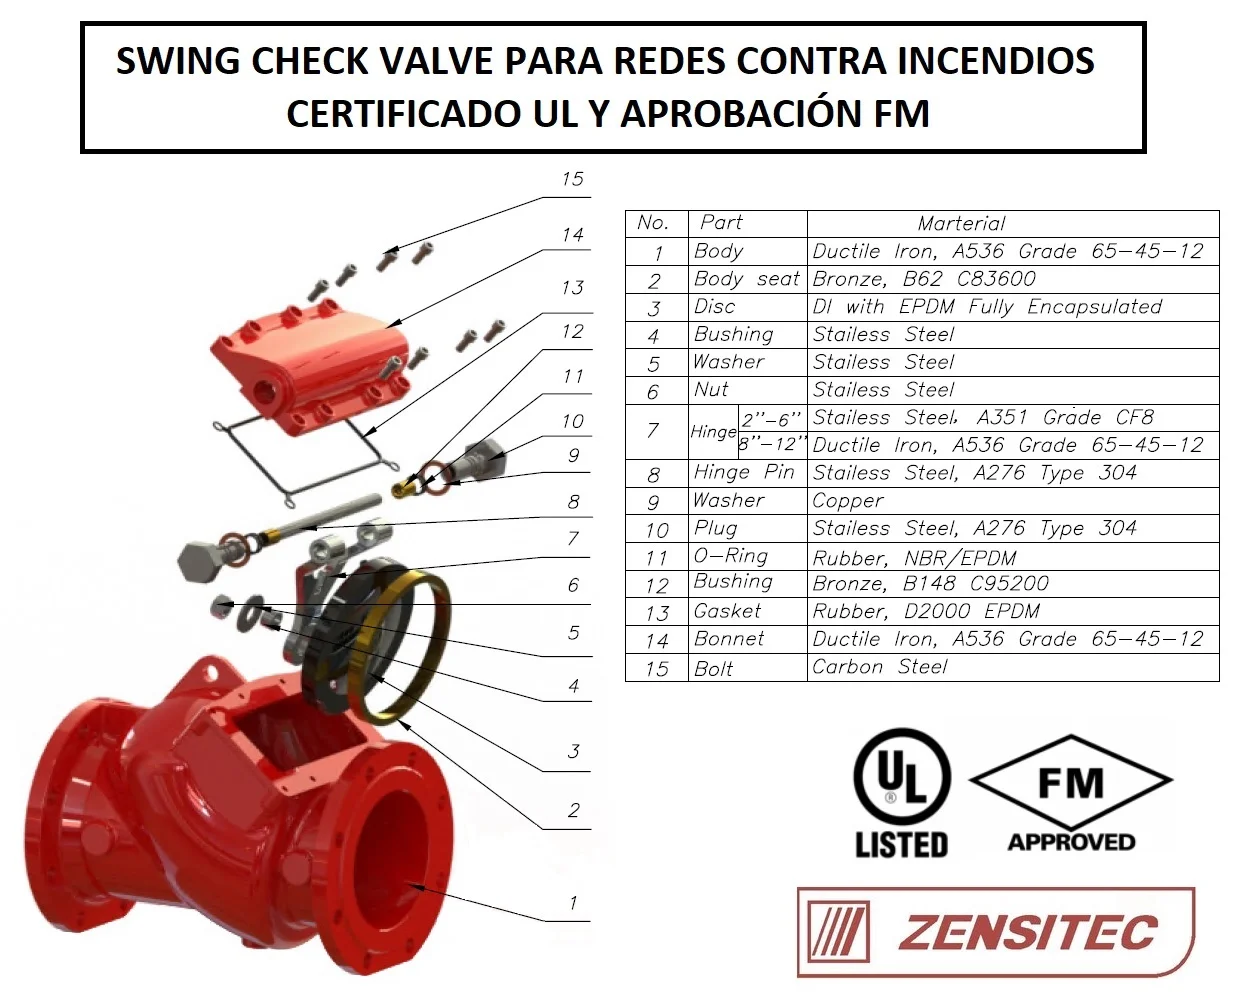 Swing check valve para redes contra incendios UL y FM - Zensitec 